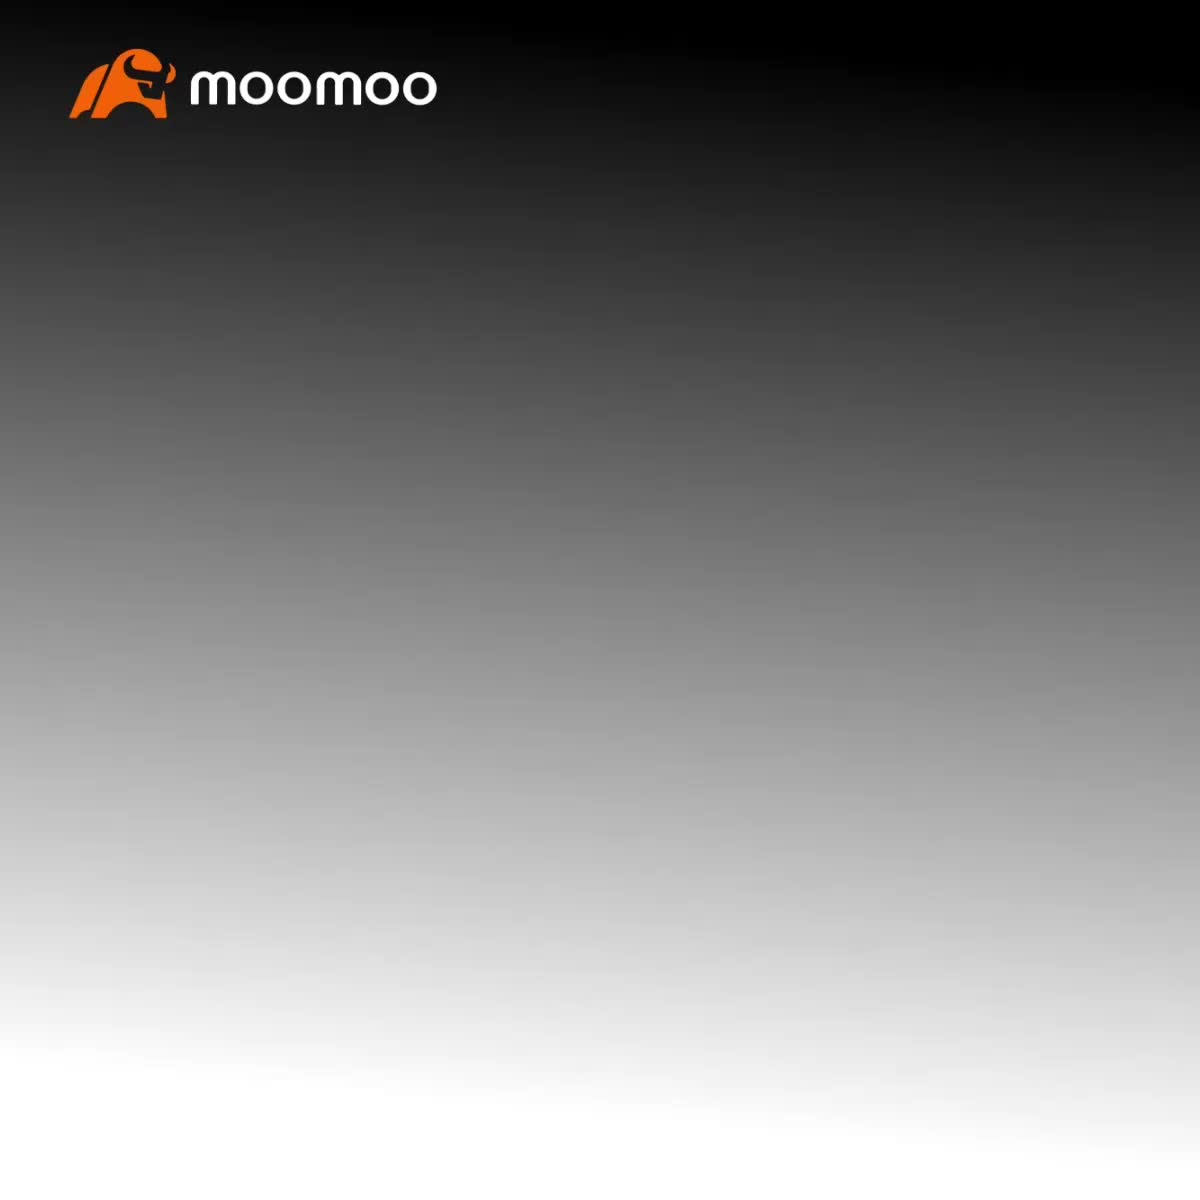 Moomooさんの新しいデスクトップリリース：機能体験オフィサーとして参加し、$50のキャッシュリワードを得る可能性があります！